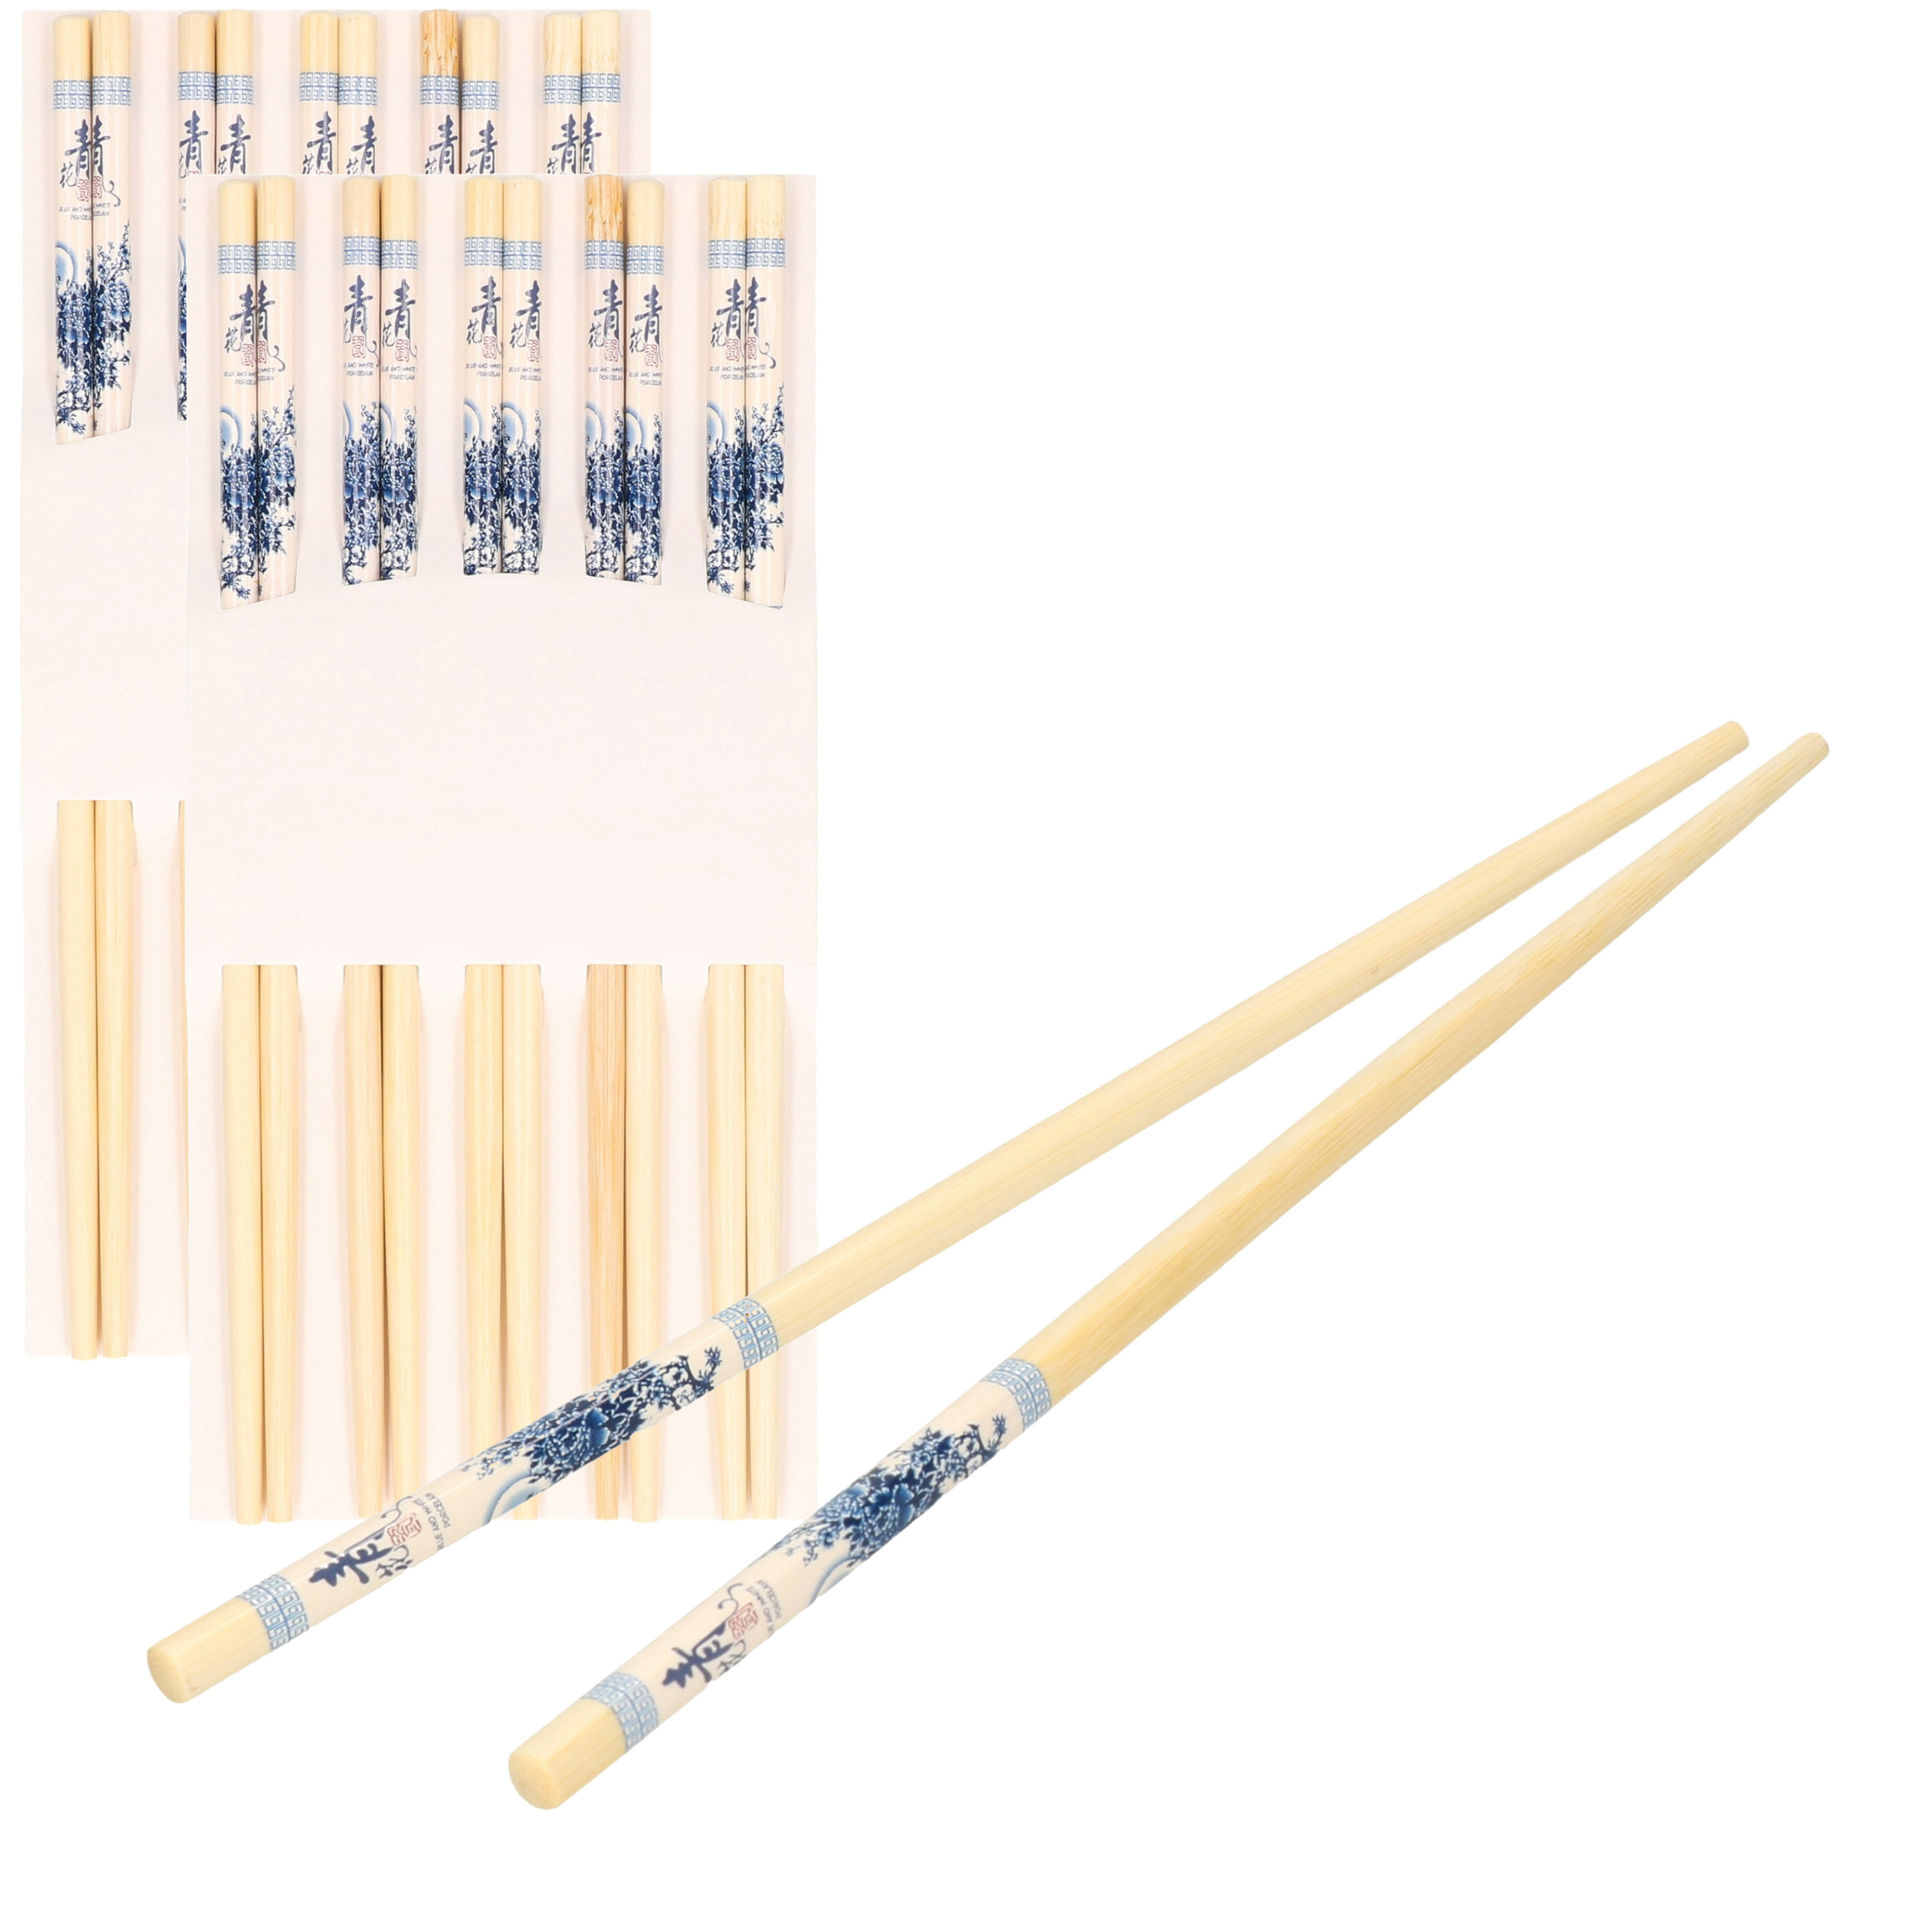 Sushi eetstokjes 10x setjes bamboe hout blauwe print 24 cm